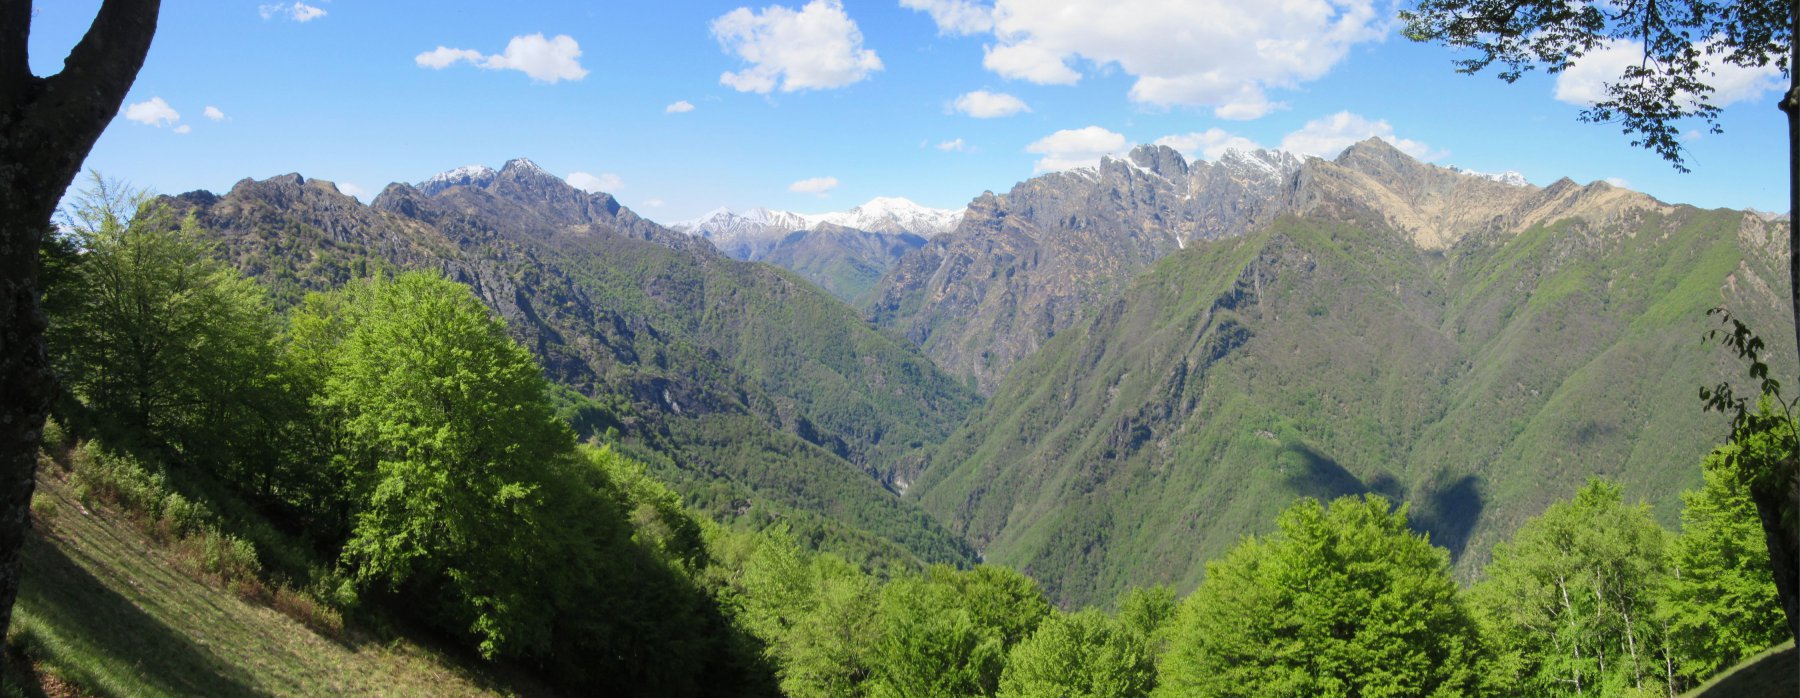 La selvaggia Val Grande vista dall'Alpe Caseracce